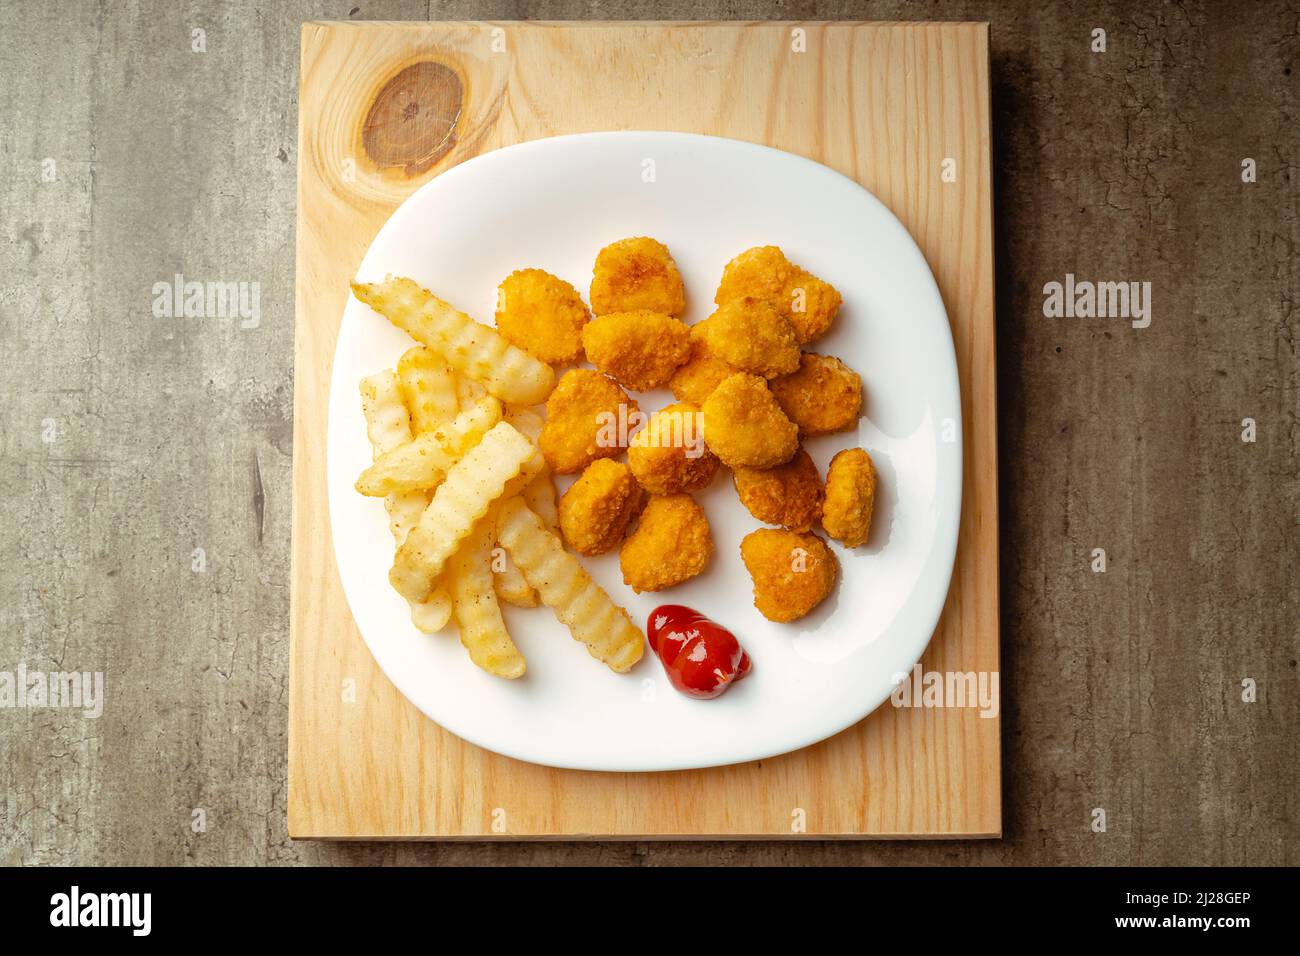 Nuggets de poulet et frites avec un peu de sauce tomate sur une assiette sur une surface en bois, prêts à manger, repas rapide Banque D'Images